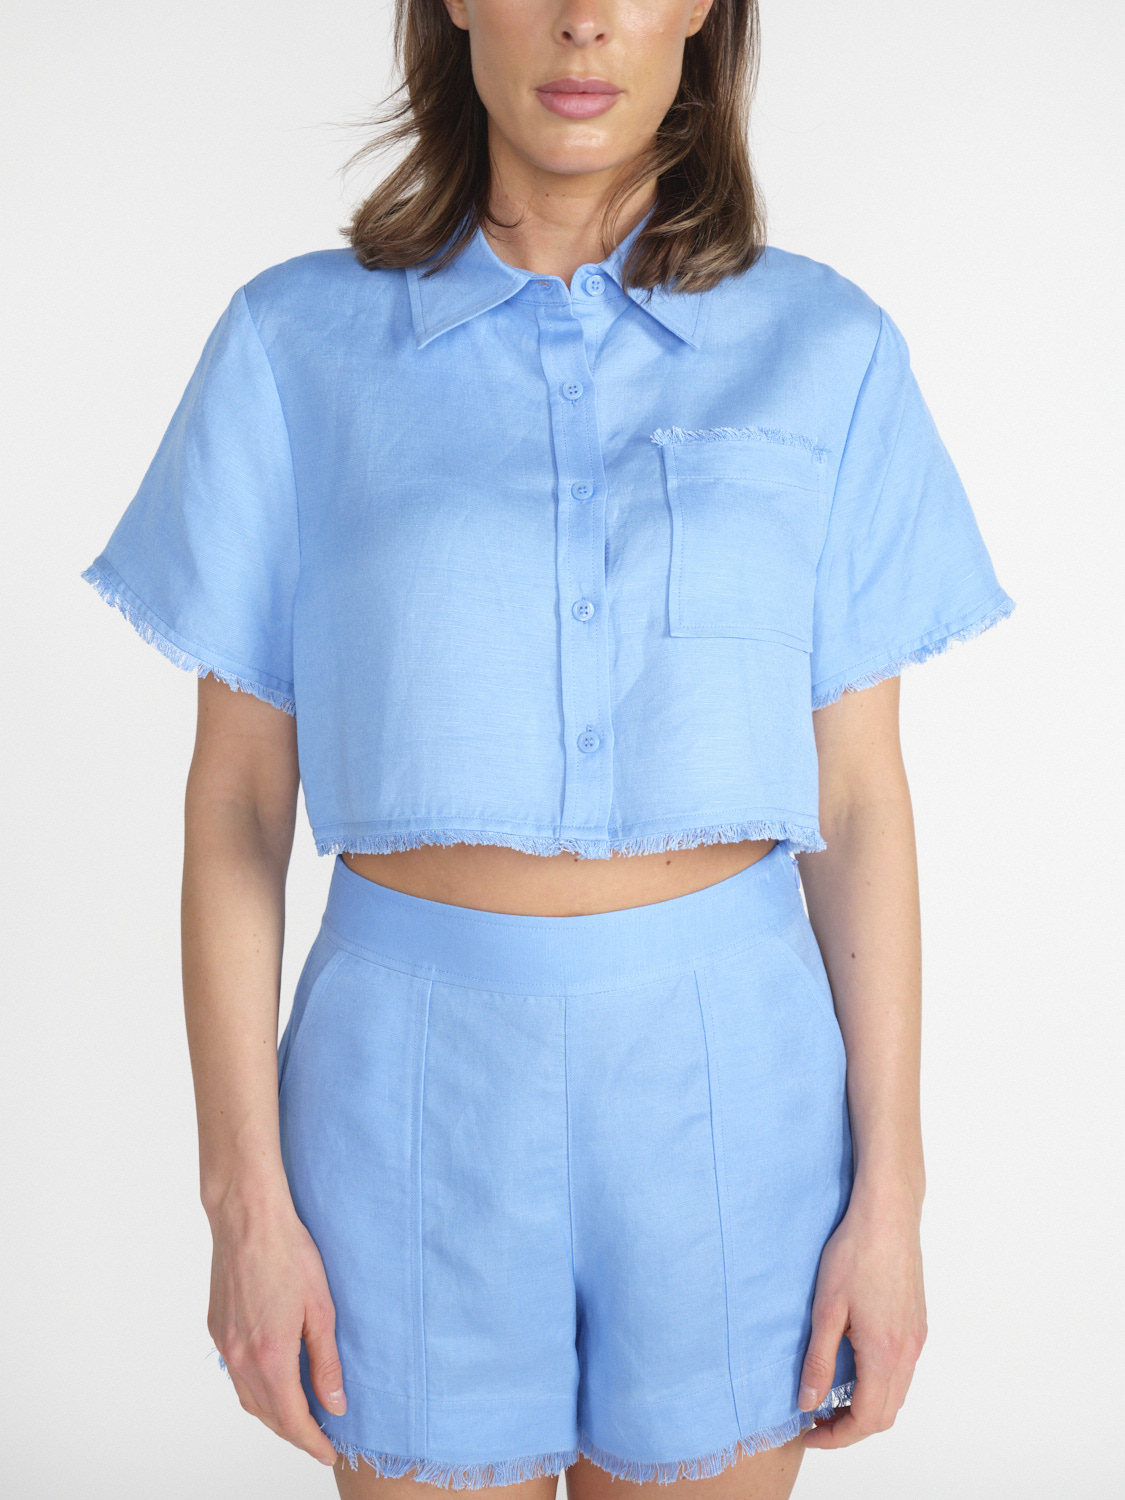 Simkhai Solange - beschnittenes Shirt blau S